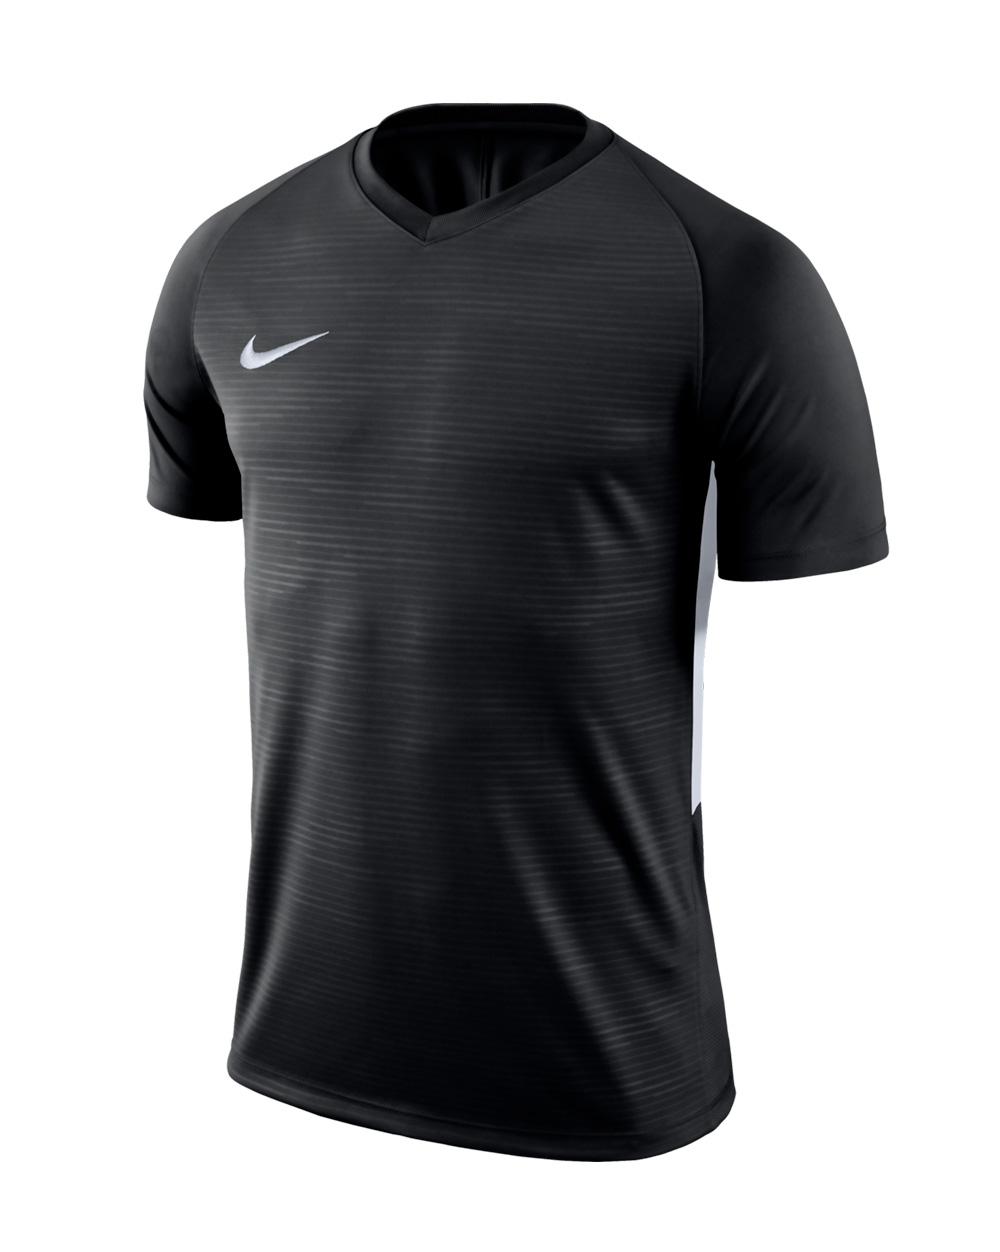 Camiseta Nike Futbol Tiempo - Camisetas